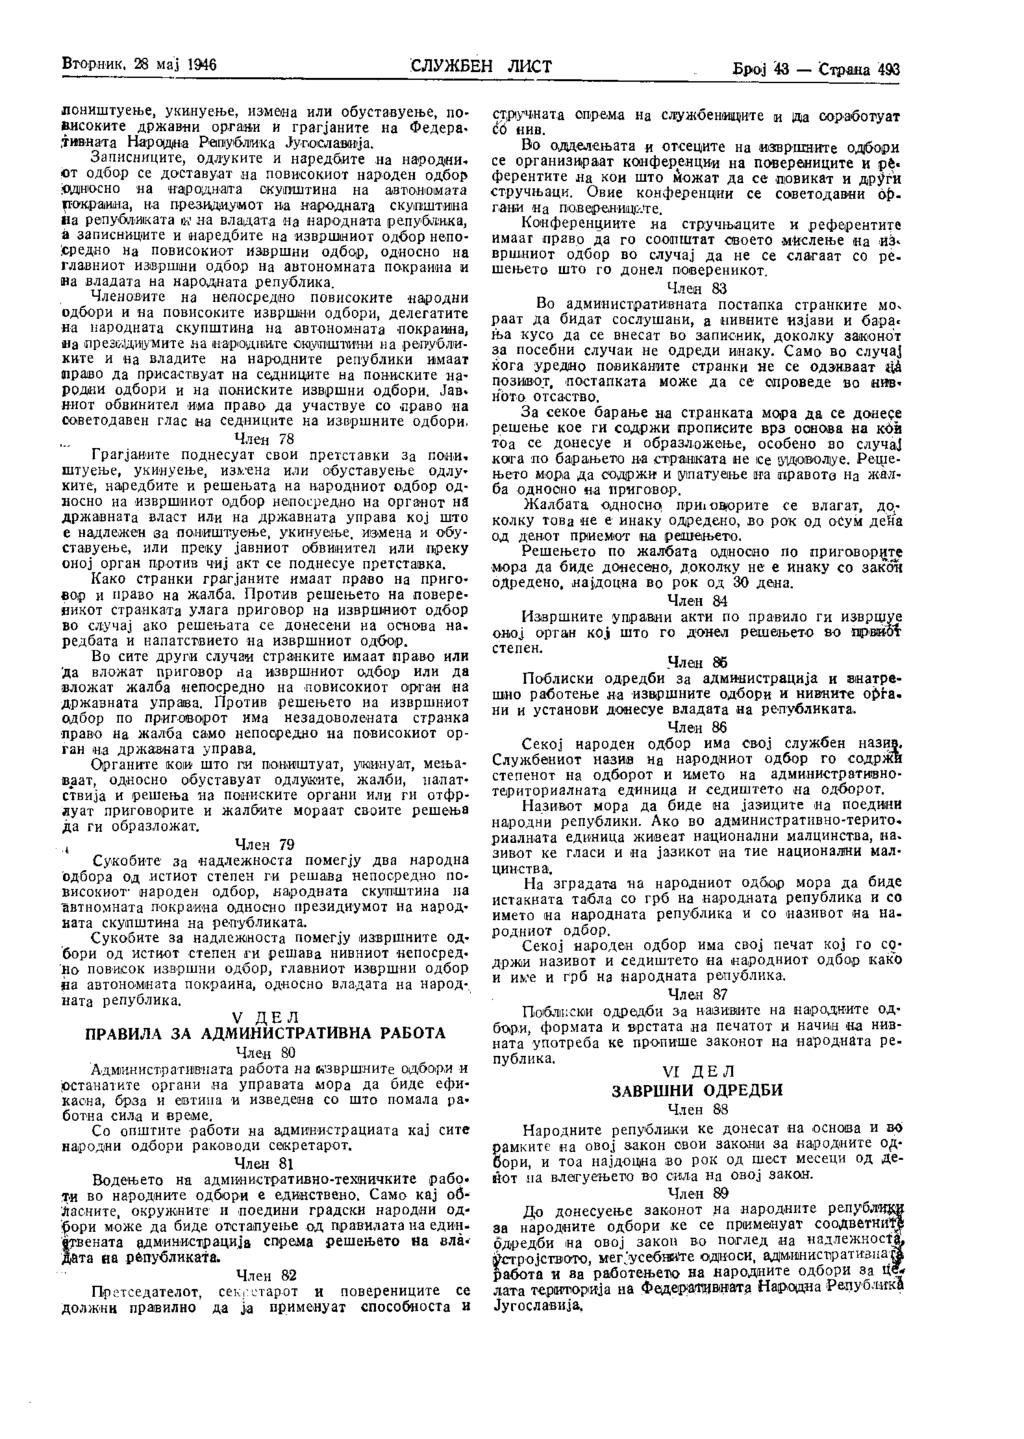 Вторник, 28 мај 1946 СЛУЖБЕН ЛИСТ Број 43 Страна III лоништуење, укинуење, измена или обуставуење, повисоките државни органи и грабаните на Федера-.тивиата Народна Република Југославија.